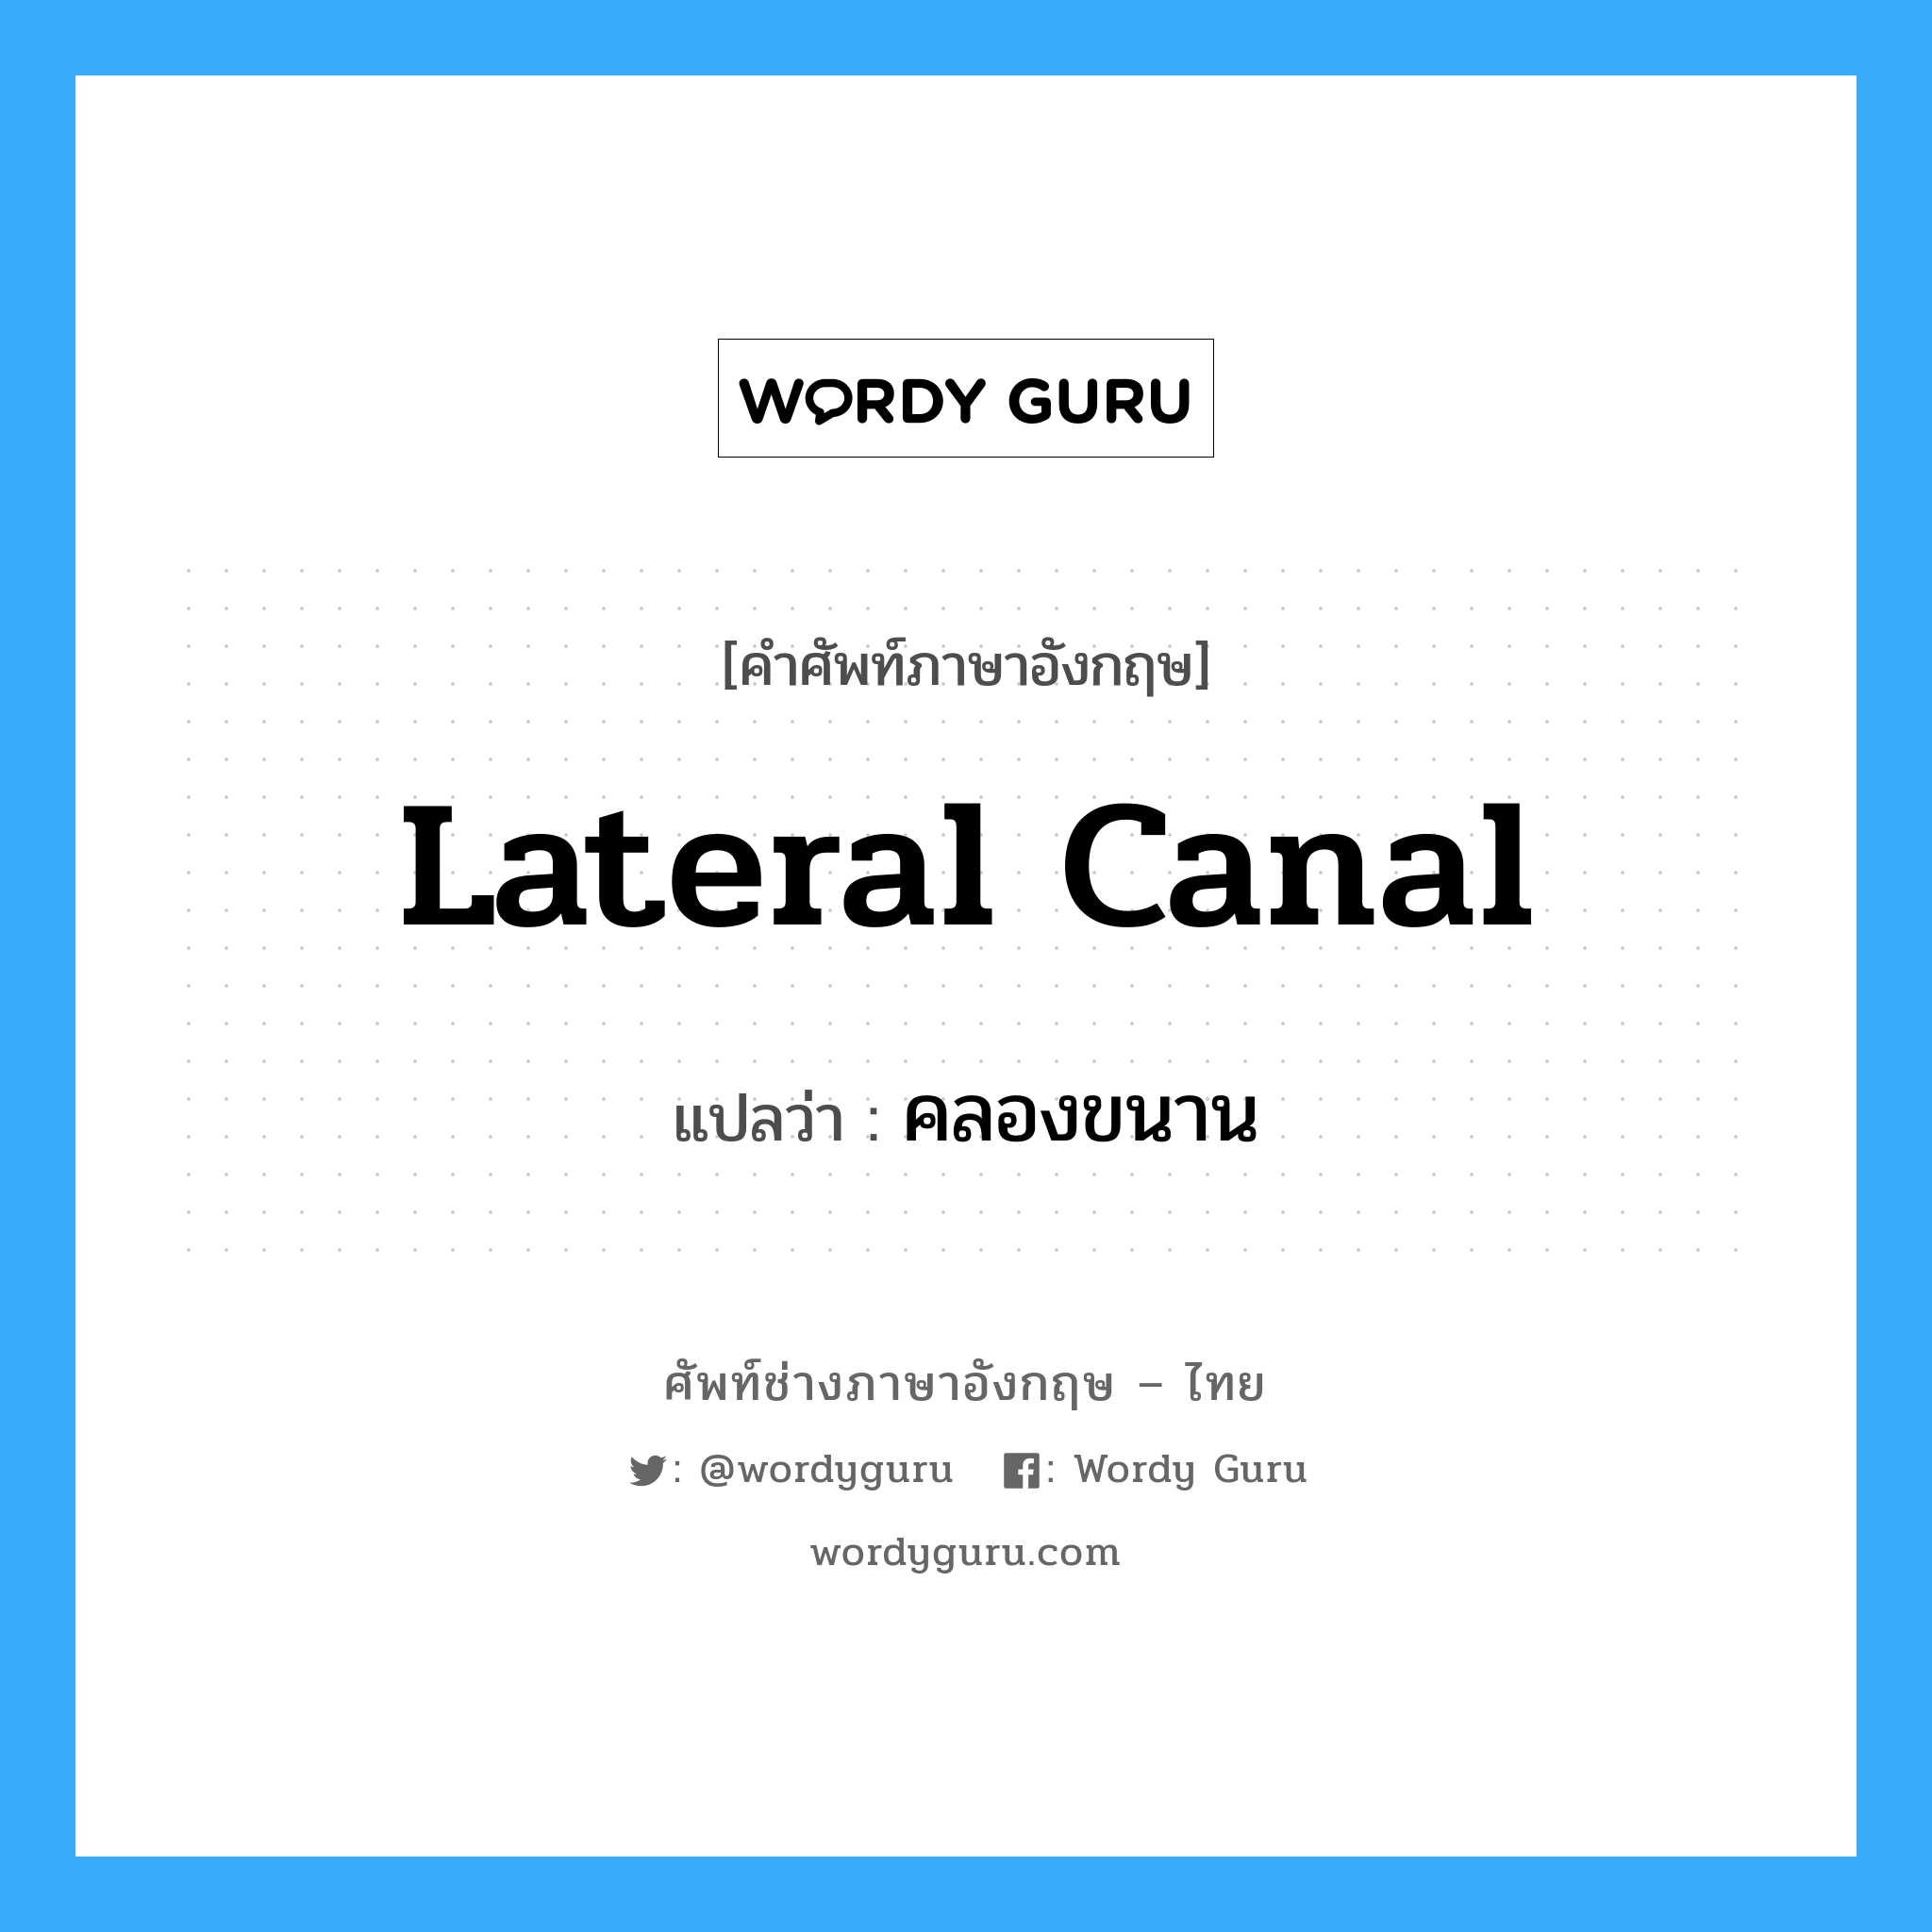 lateral canal แปลว่า?, คำศัพท์ช่างภาษาอังกฤษ - ไทย lateral canal คำศัพท์ภาษาอังกฤษ lateral canal แปลว่า คลองขนาน